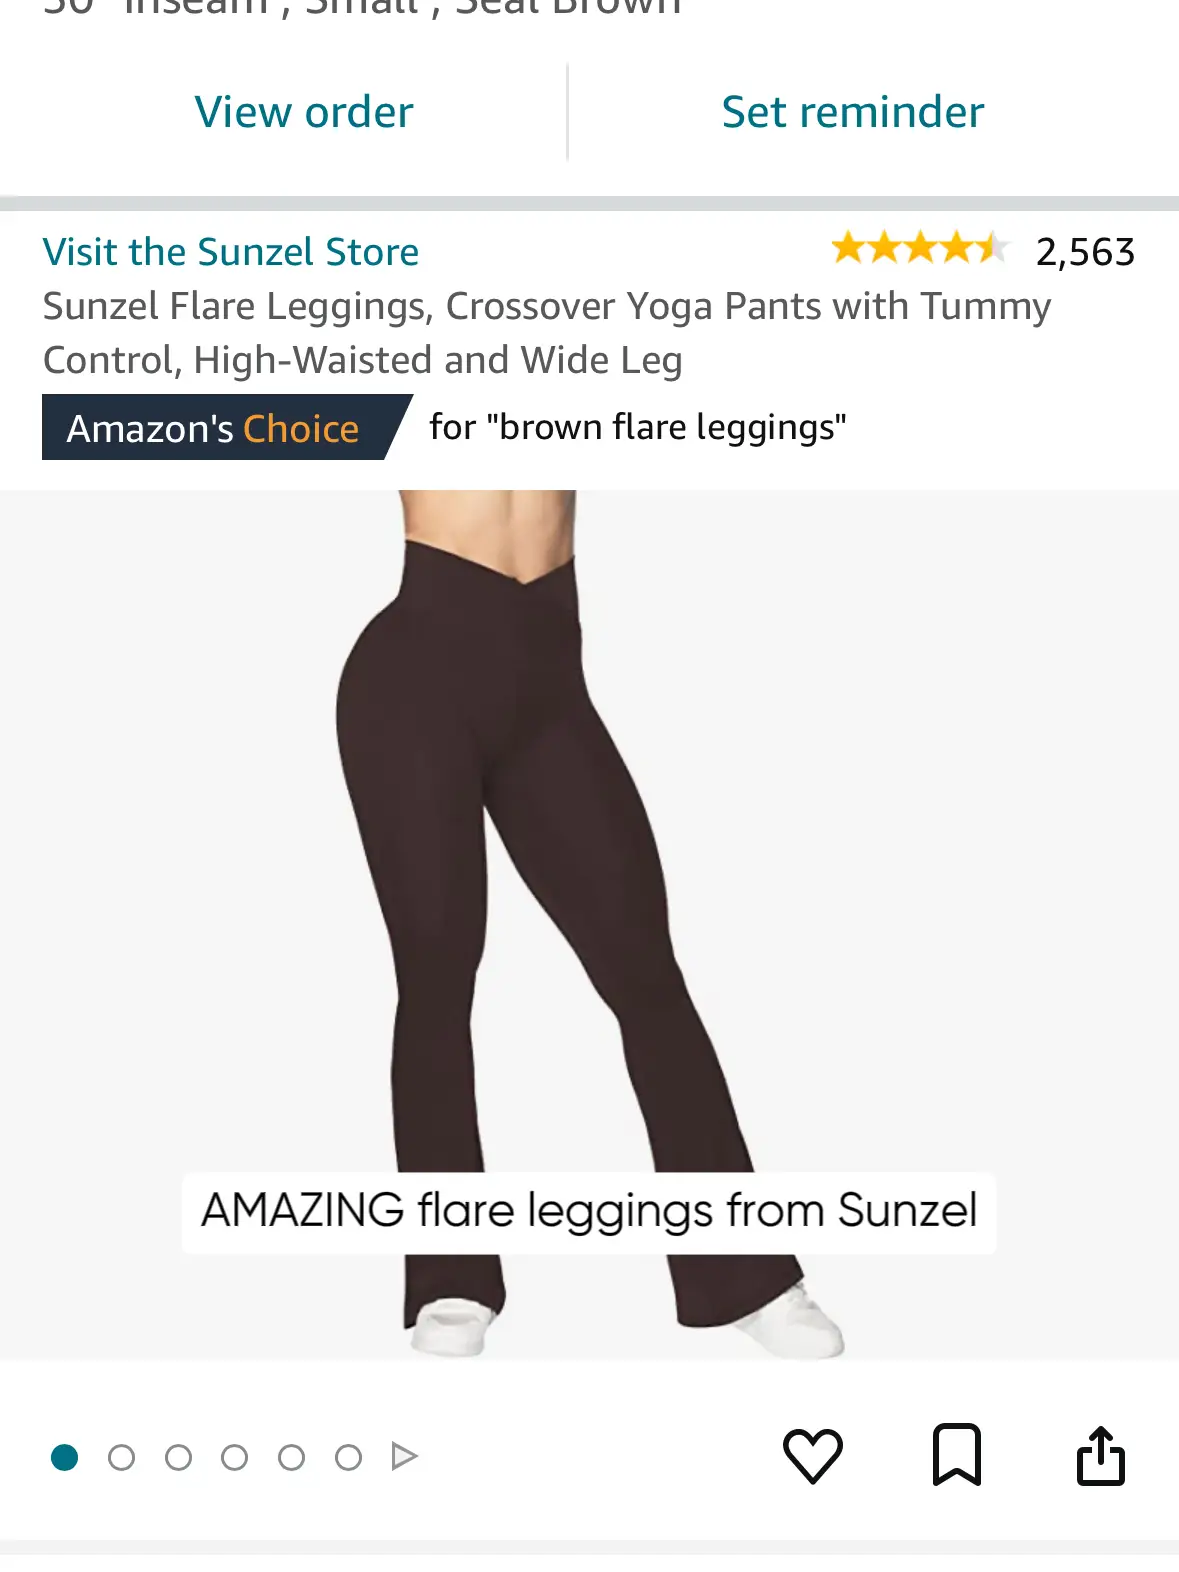  Sunzel Flare Leggings, Crossover Yoga Pants For Women